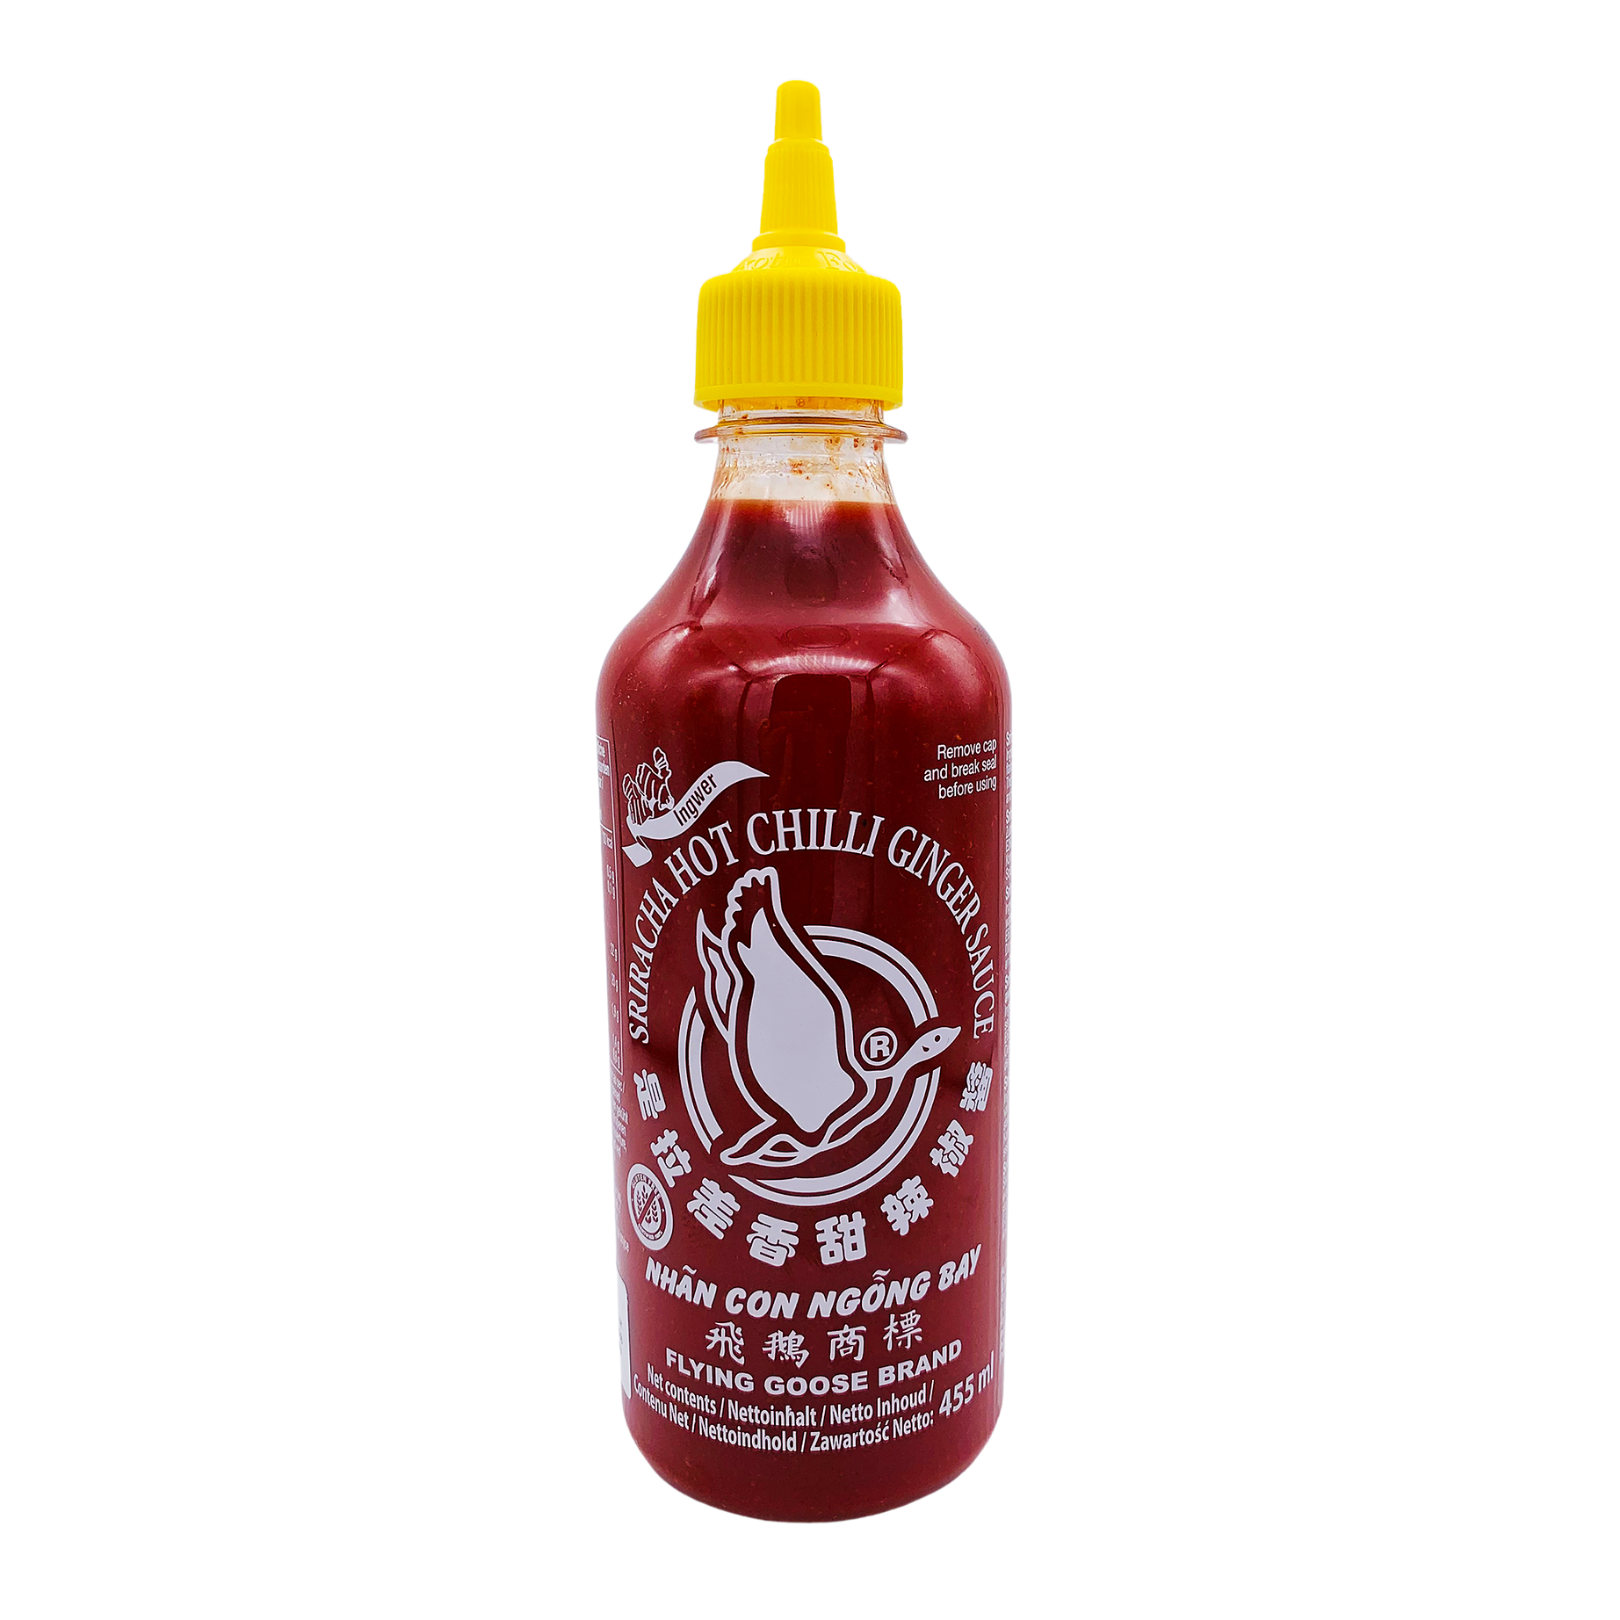 Sriracha Hot Chilli Sauce (Ginger) 455ml by Flying Goose